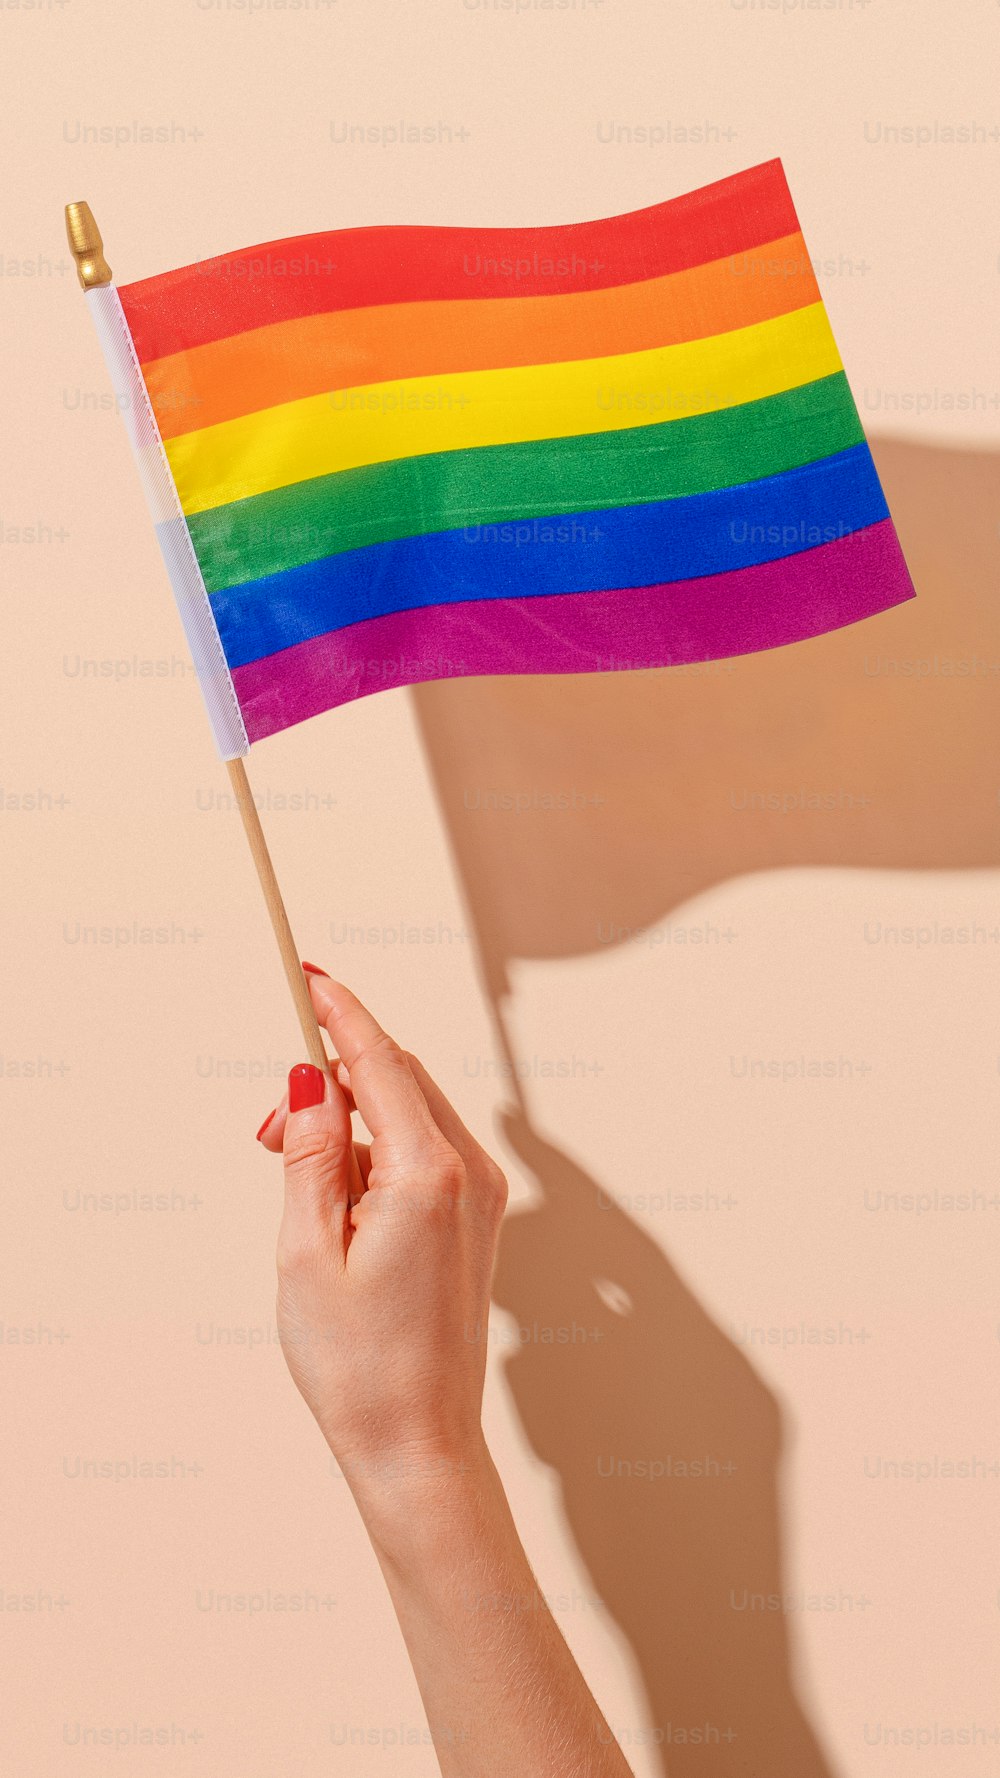 Una persona sosteniendo una bandera del arco iris en la mano